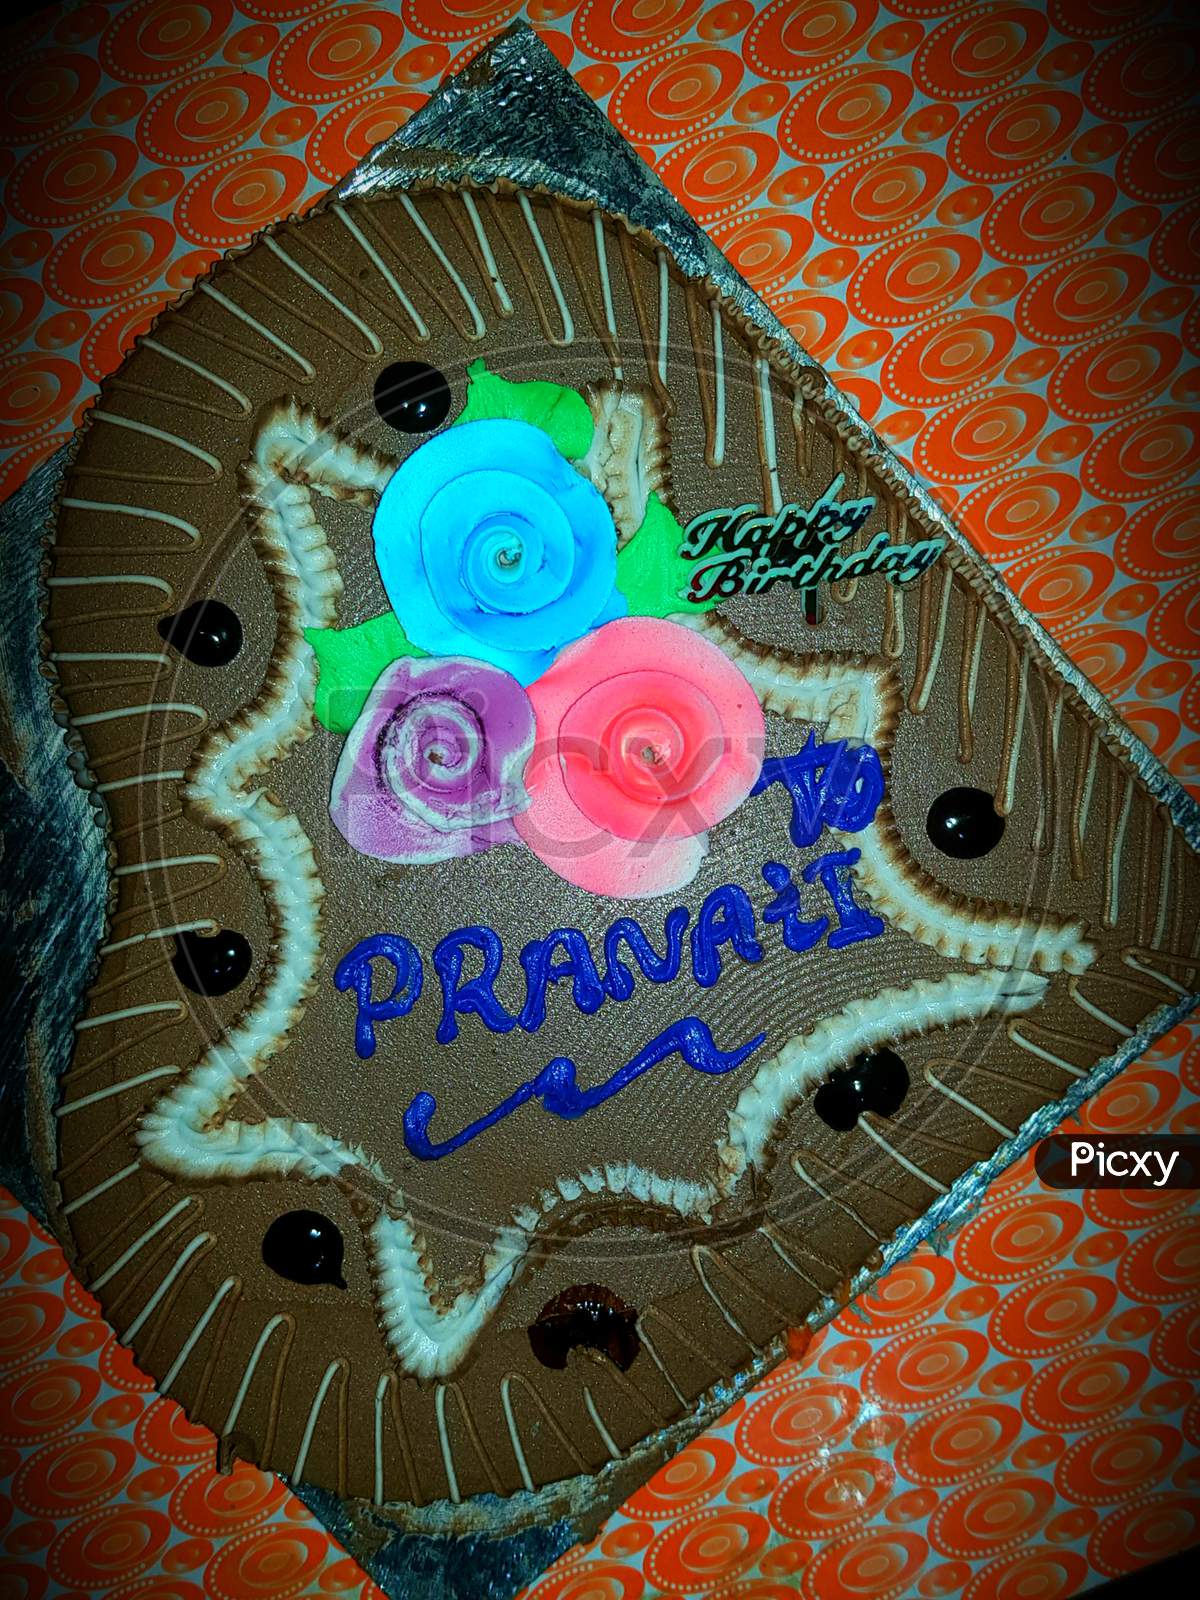 HAPPY birthday PRANATI BIRTHDAY cake wallpapr